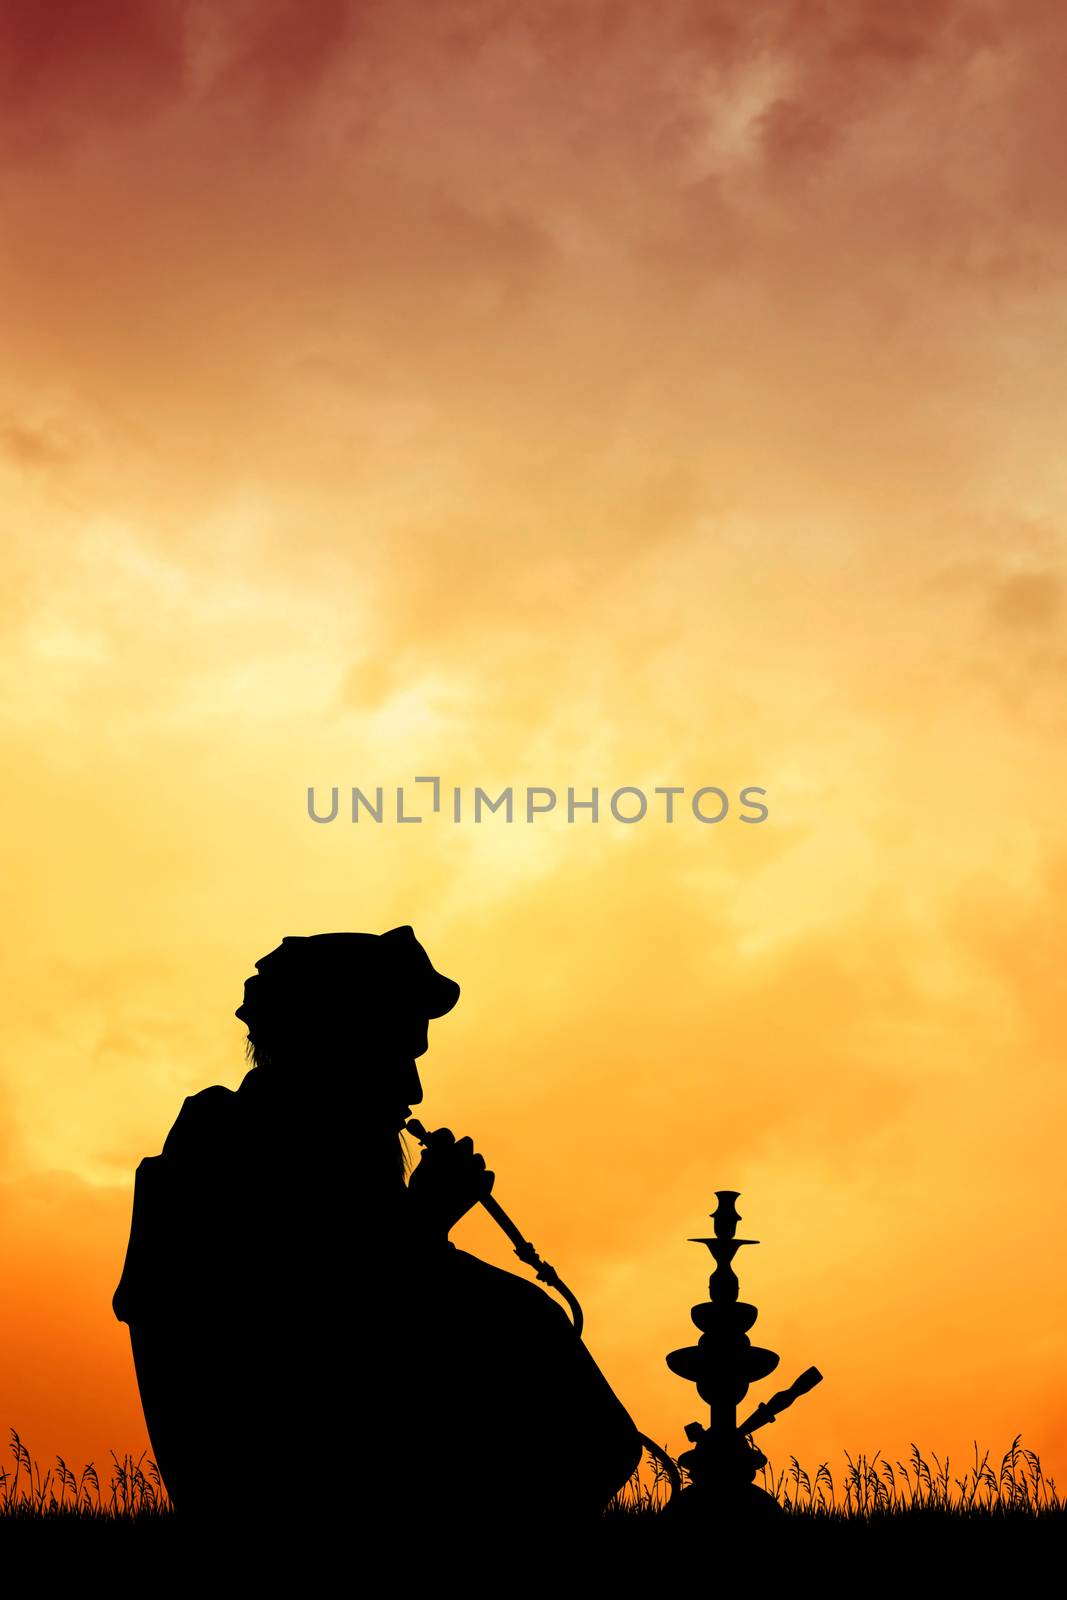 illustration of Muslim man smoke hookah silhouette at sunset